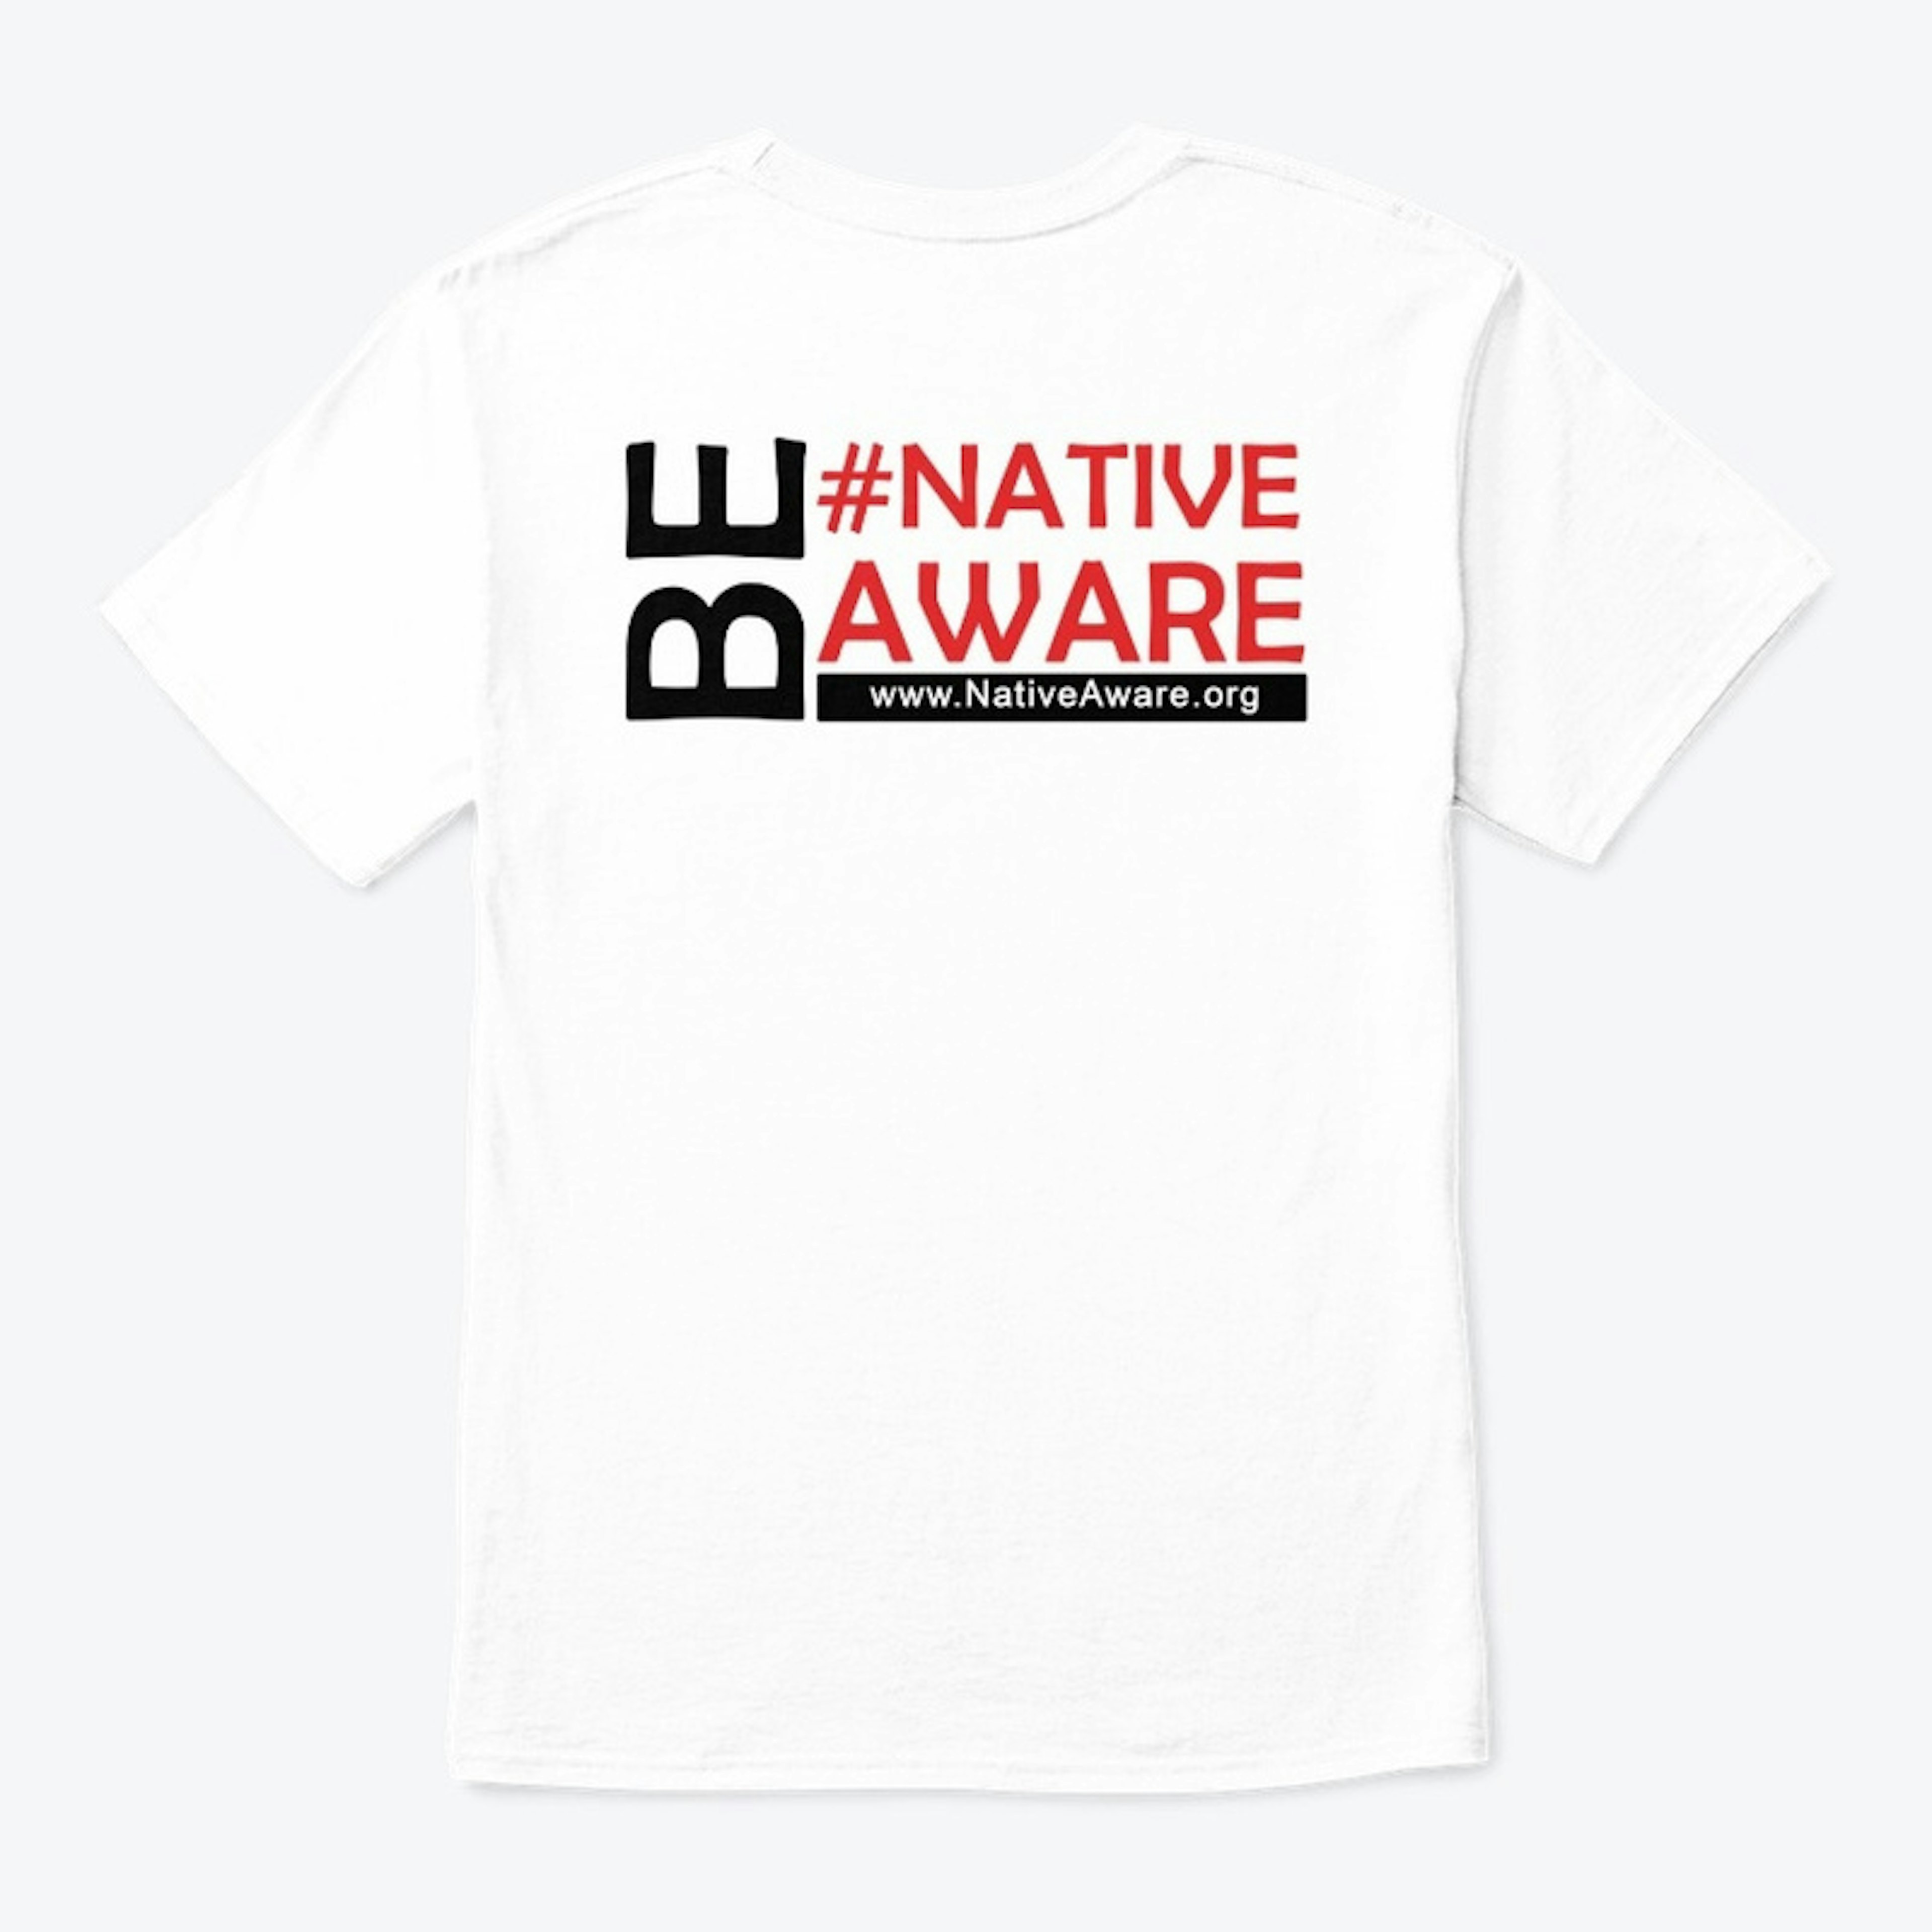 Be #NativeAware